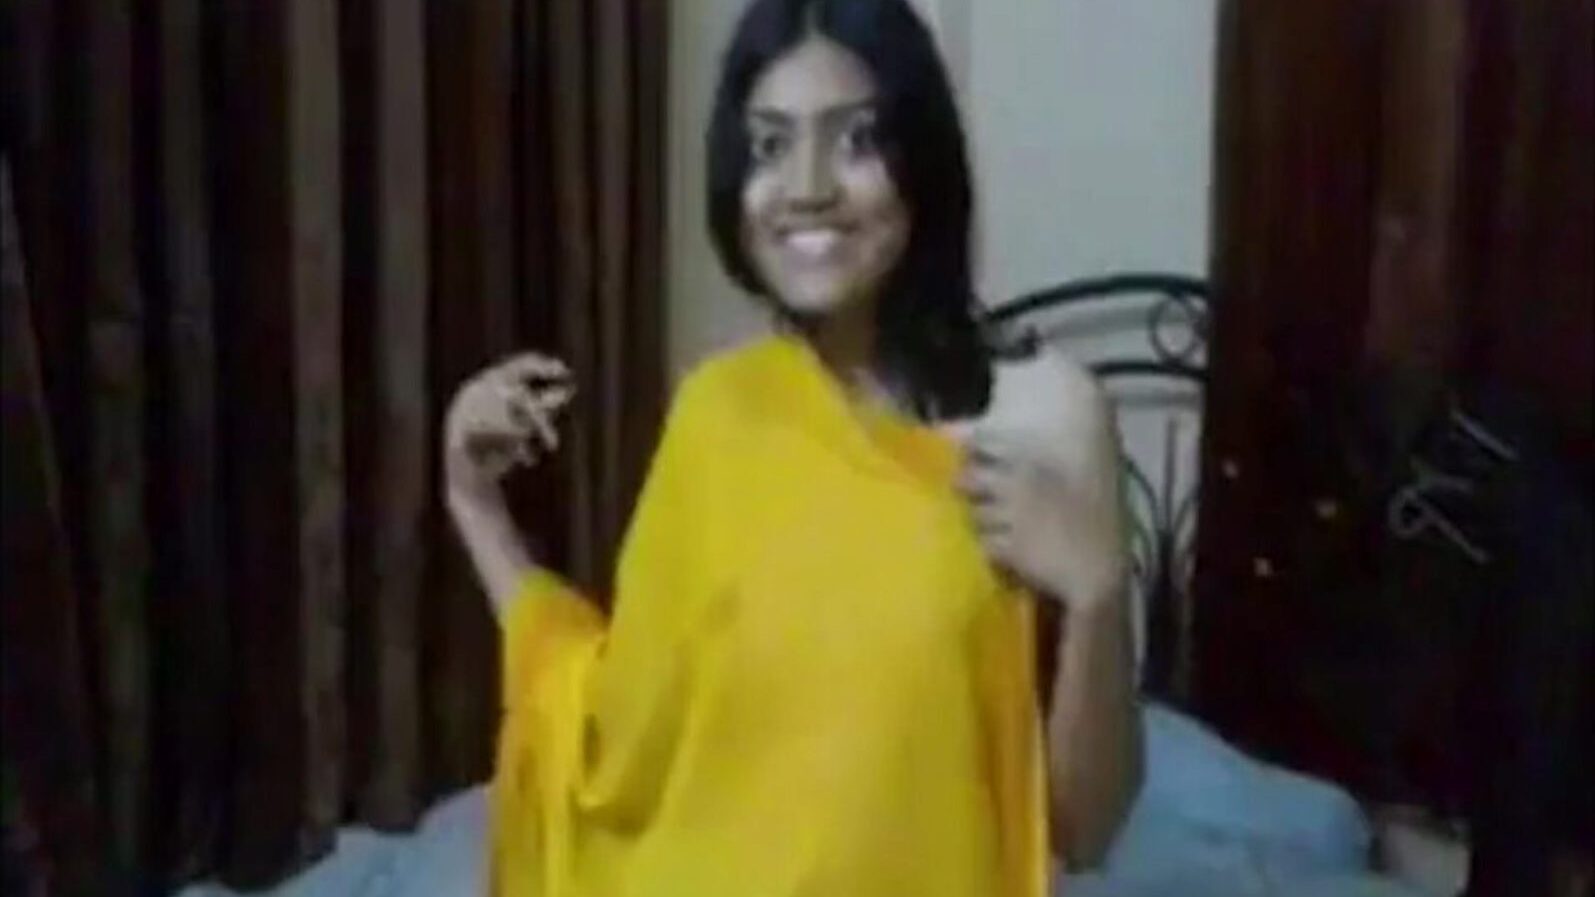 indisk college jente knulle av stedbror, porno 0c: xhamster se indisk college jente knulle av trinnbror episode på xhamster, den enorme hd fuckfest tube nettstedet med tonnevis av gratis-for-alle asiatiske faen online og blowjob porno film scener